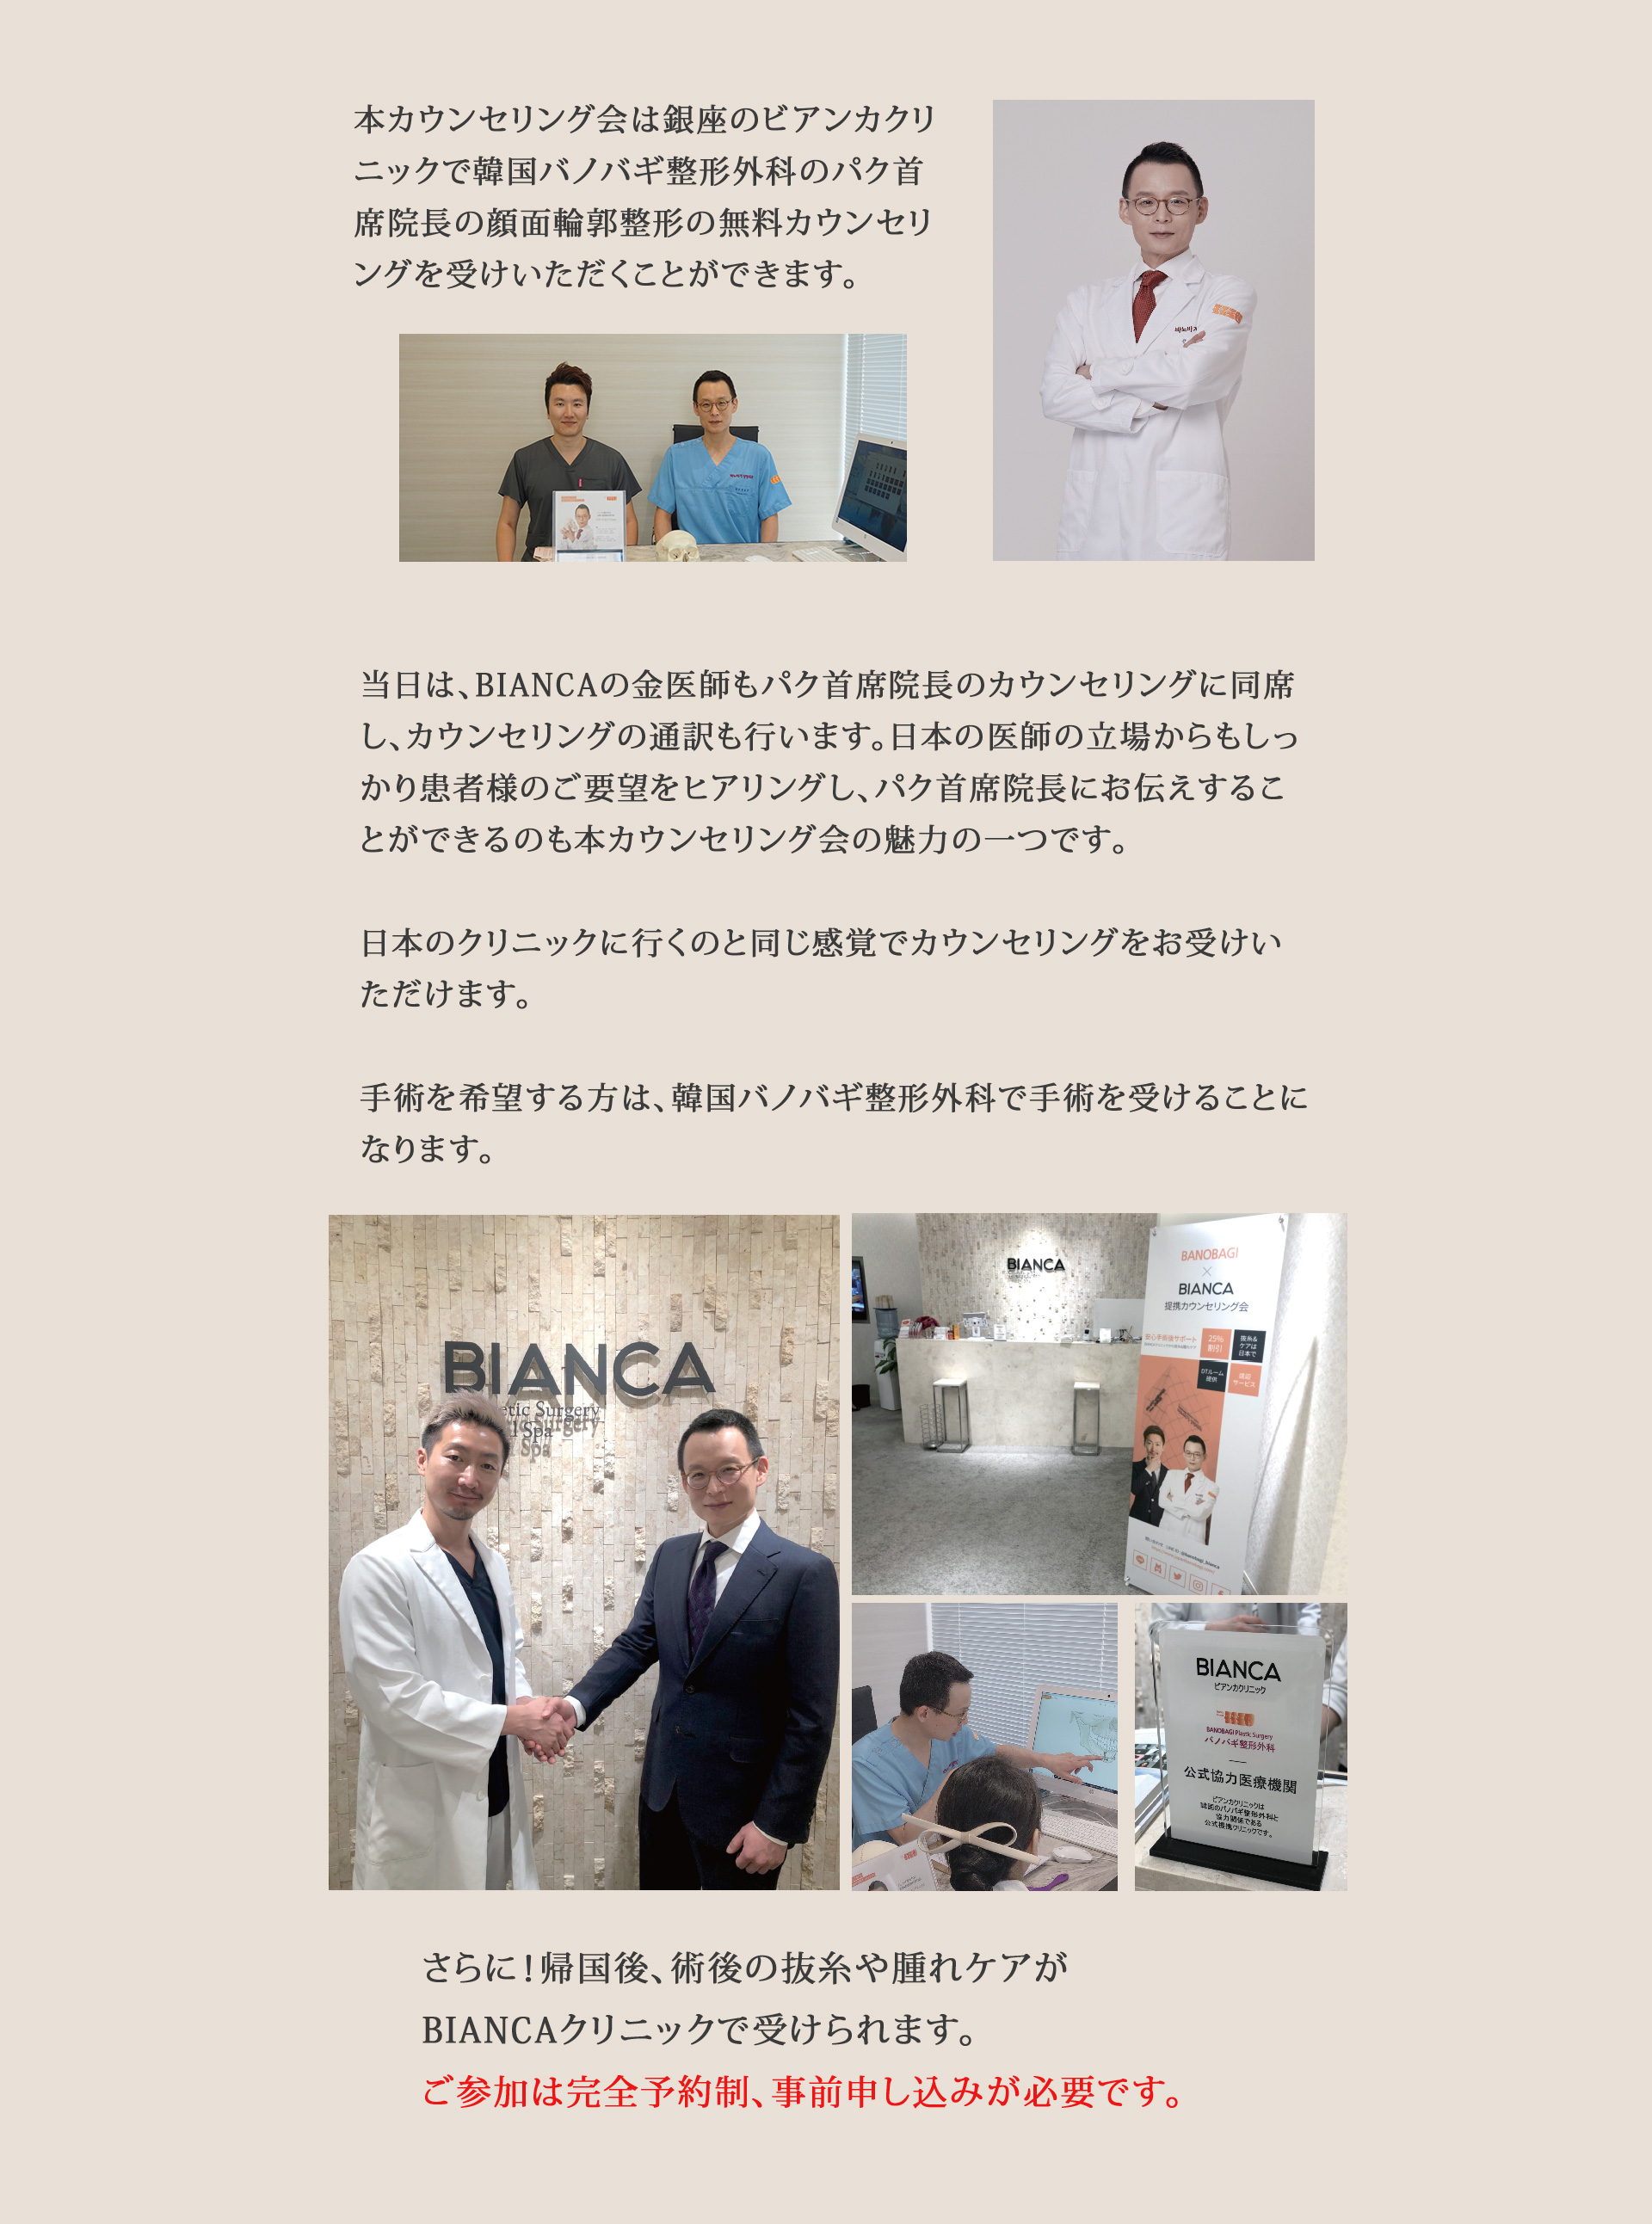 本カウンセリング会は銀座のビアンカクリニックで韓国バノバギ整形外科のパク首席院長の顔面輪郭整形の無料カウンセリングを受けいただくことができます。